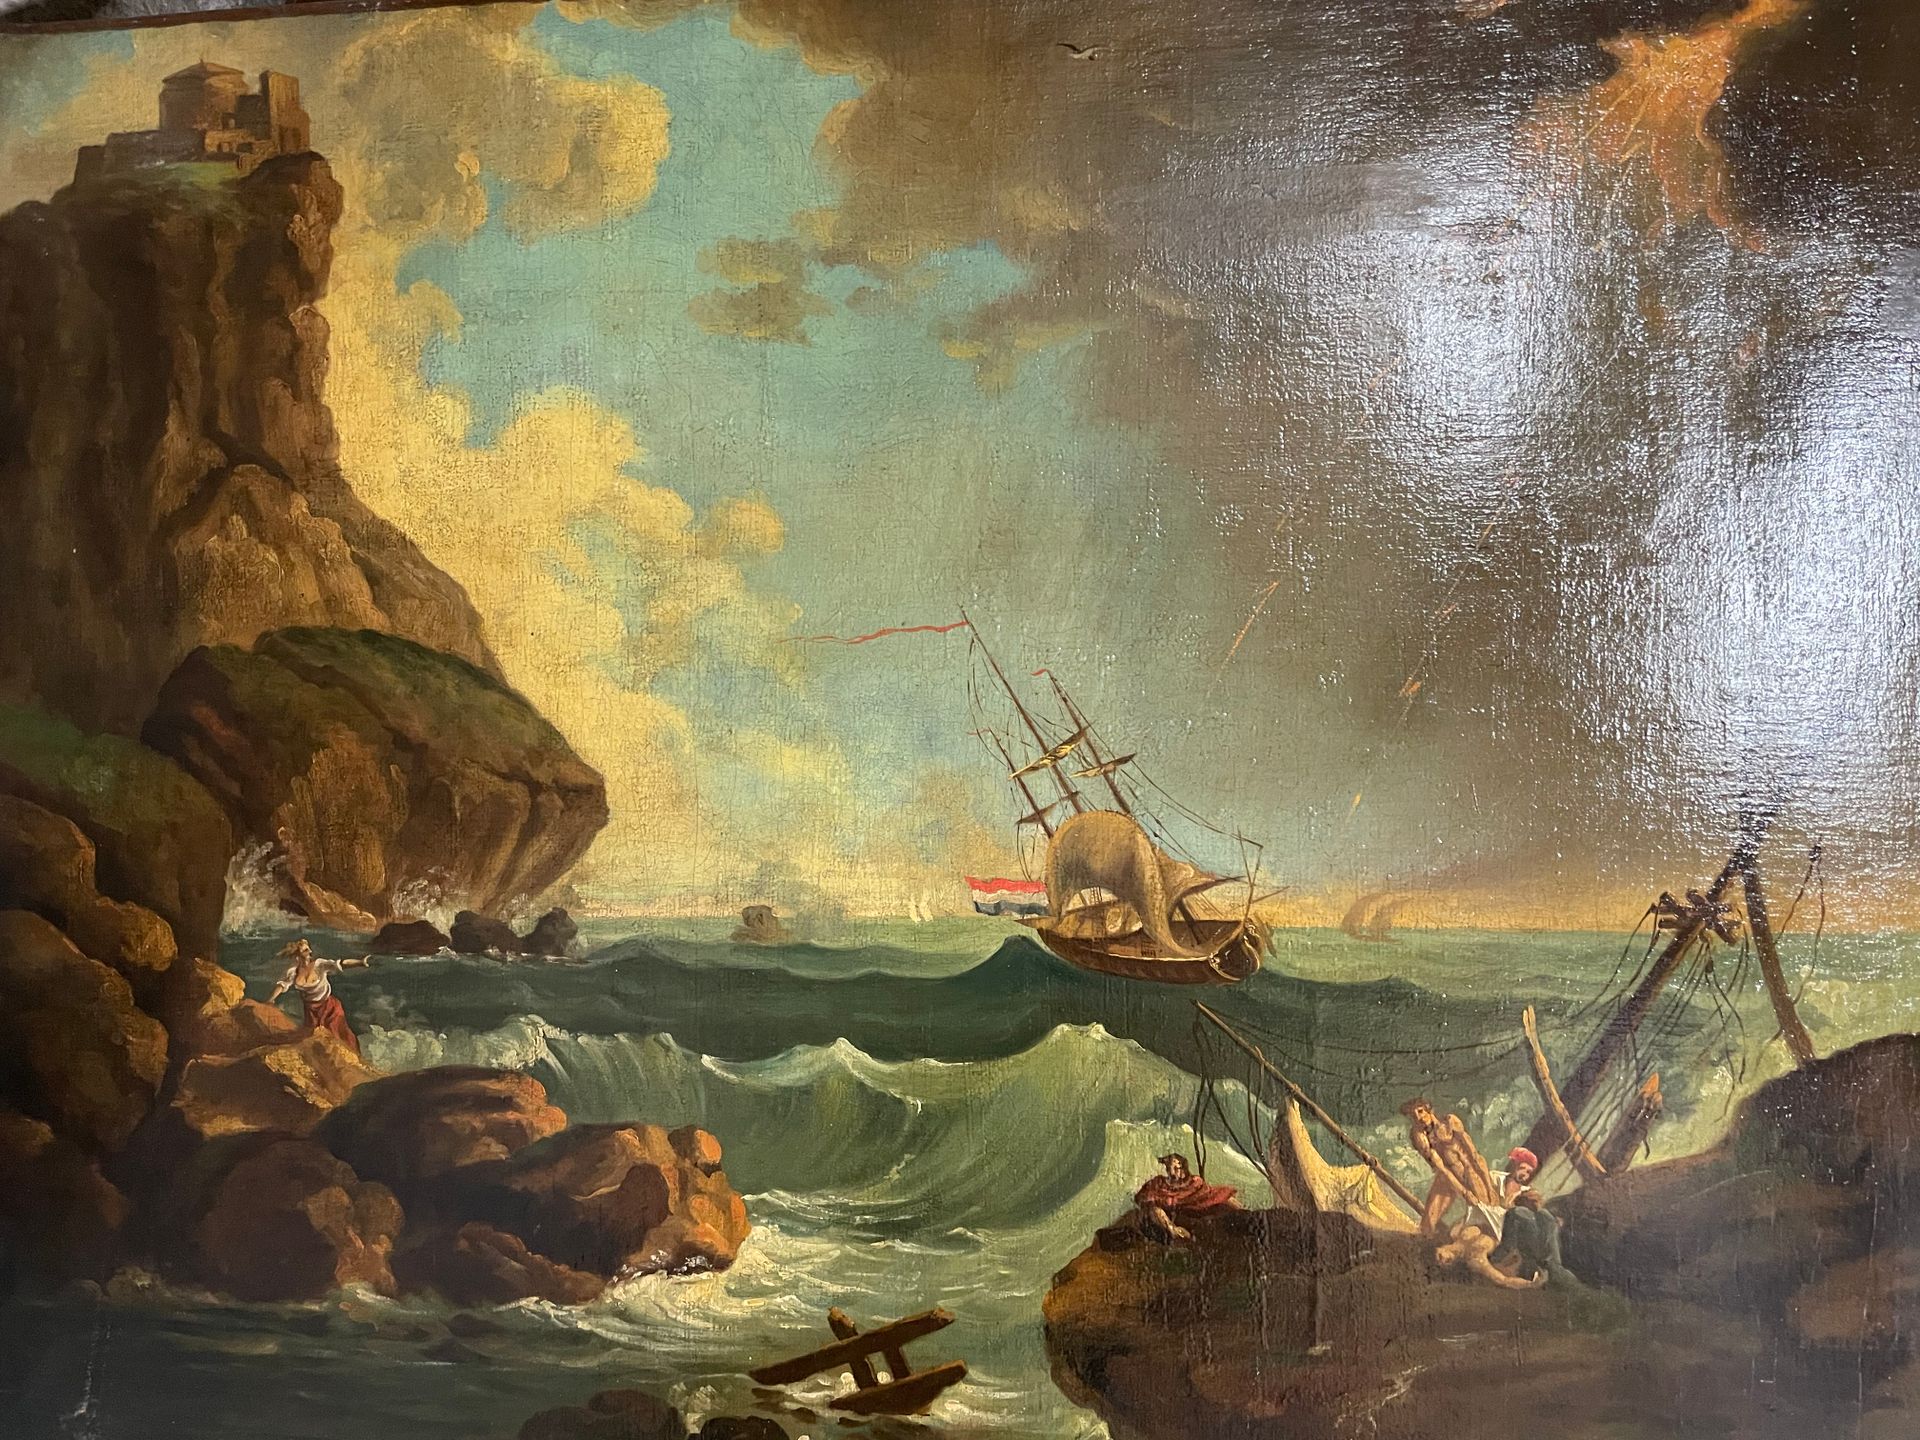 D'après Claude Joseph VERNET 岩石海岸上的风暴
布面油画
101x77 cm.